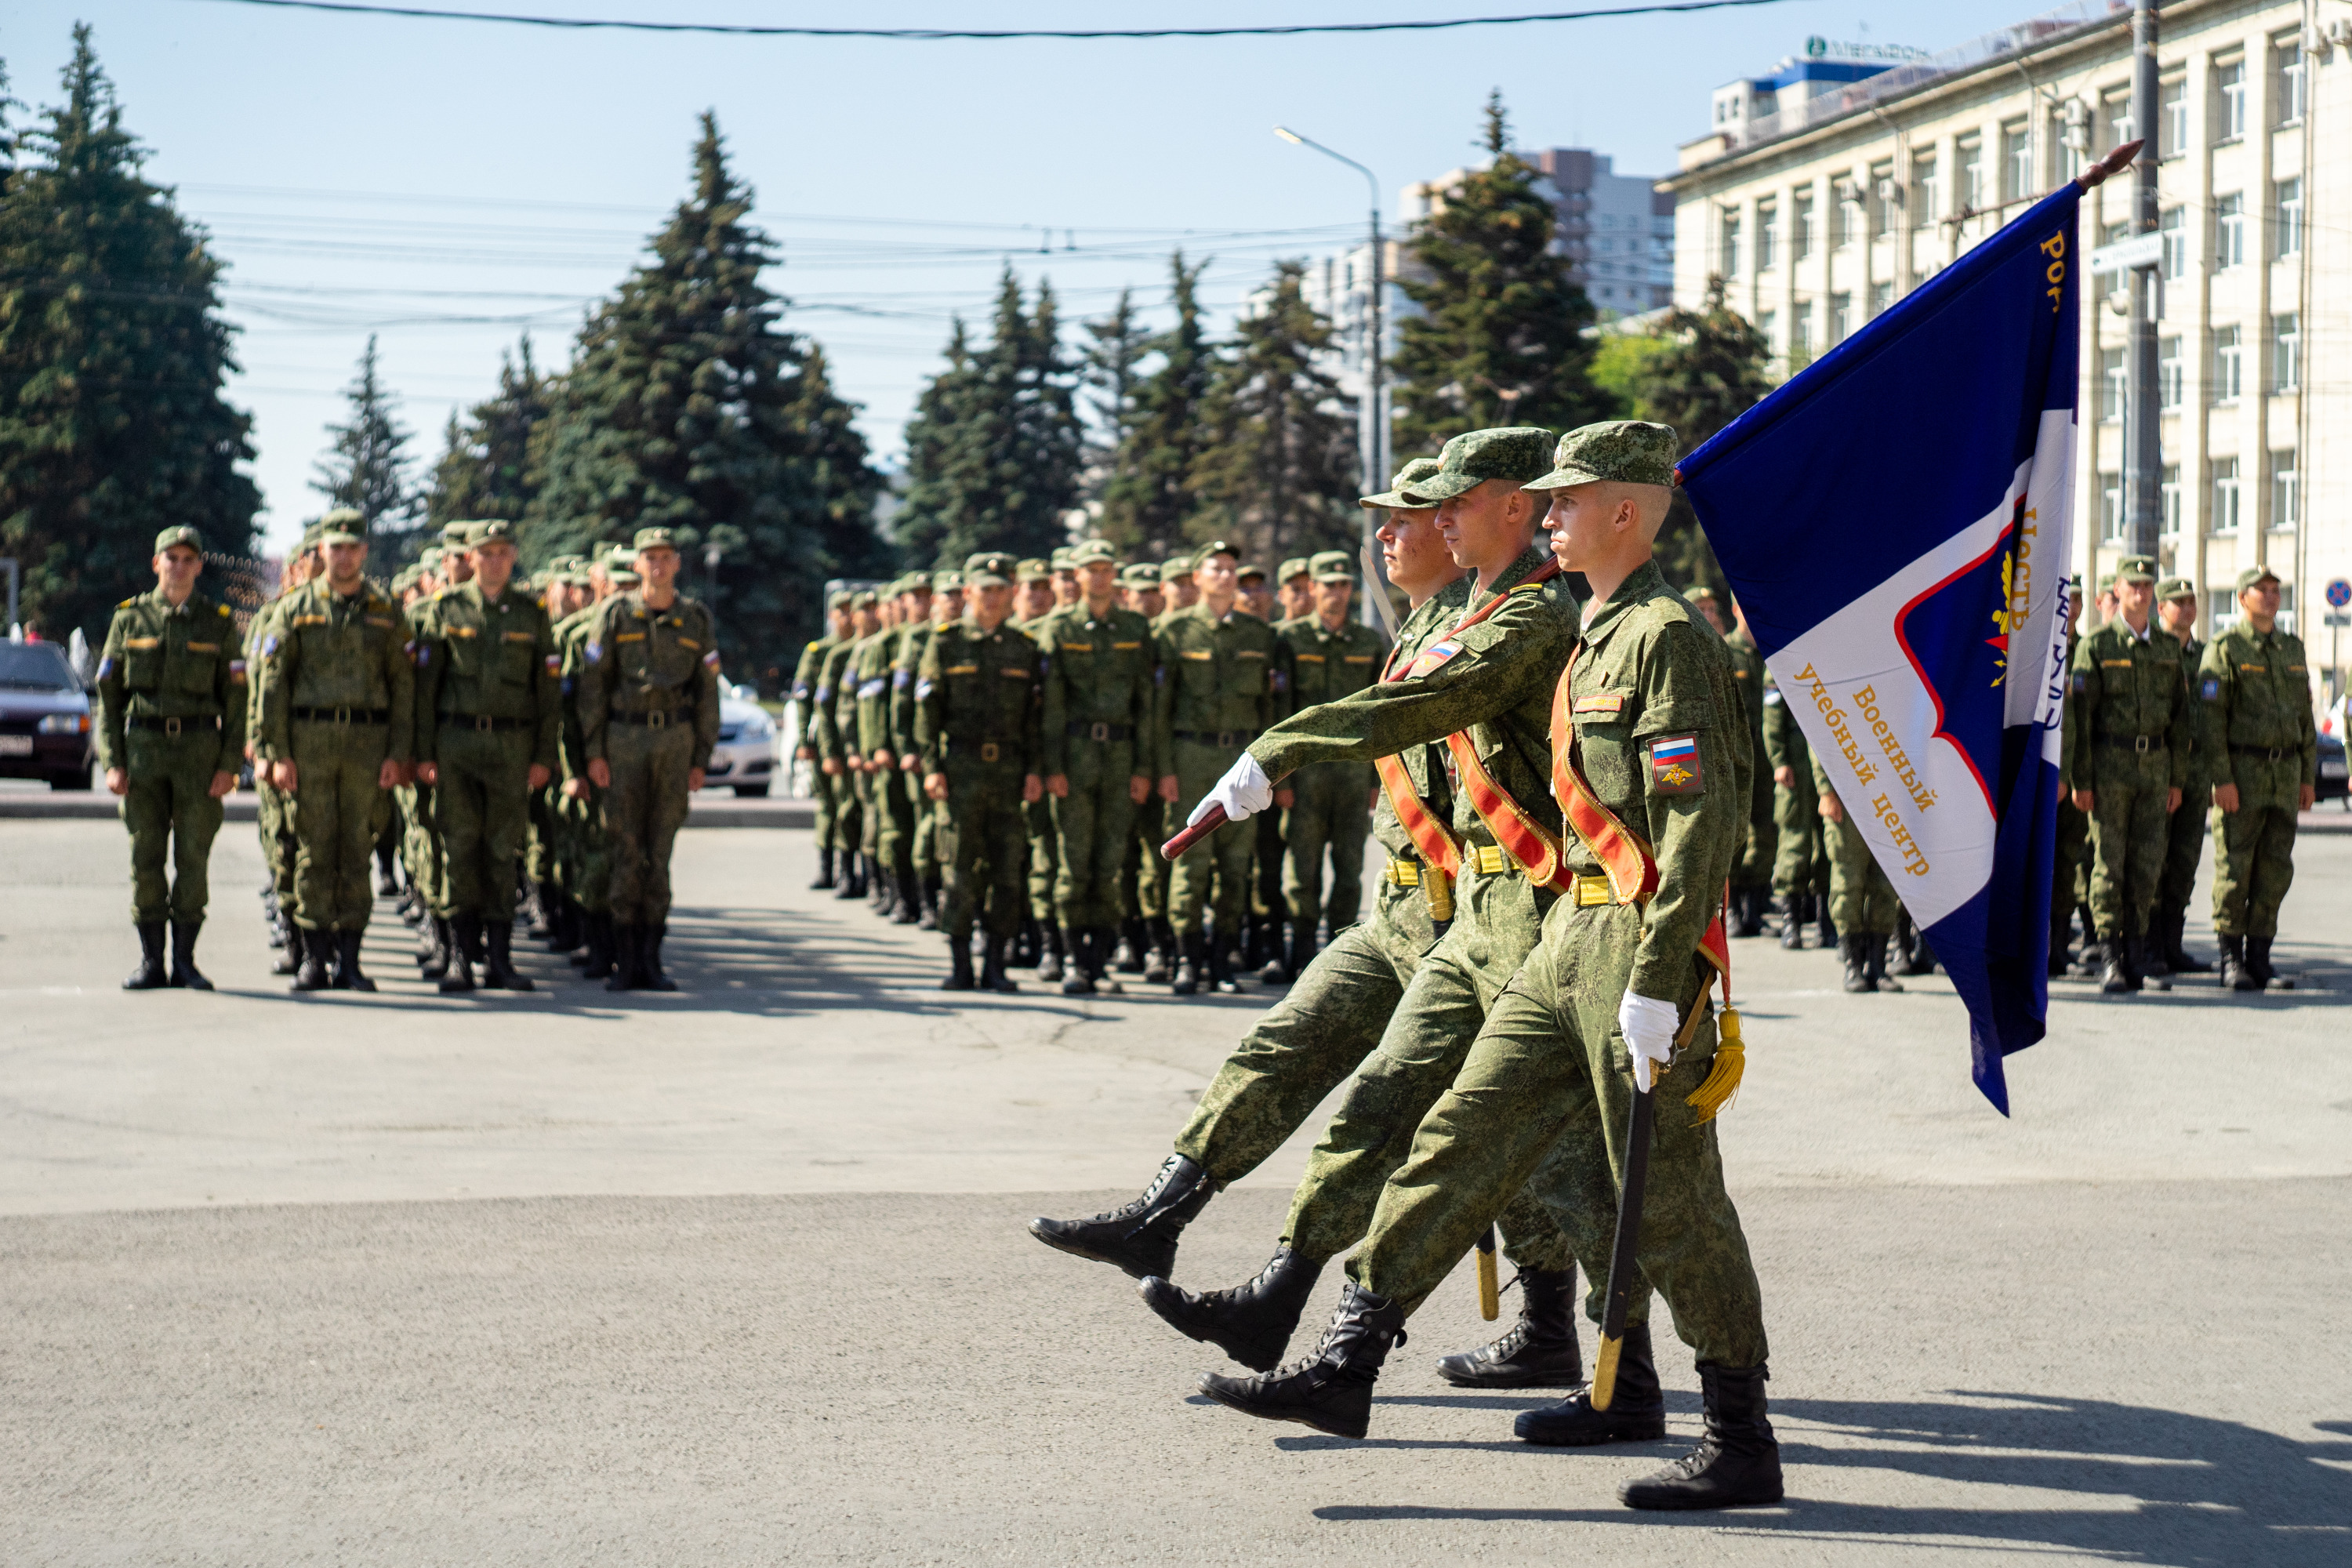 Сегодня ВУЦ — единственный в области и самый крупный в Российской Федерации Военный учебный центр